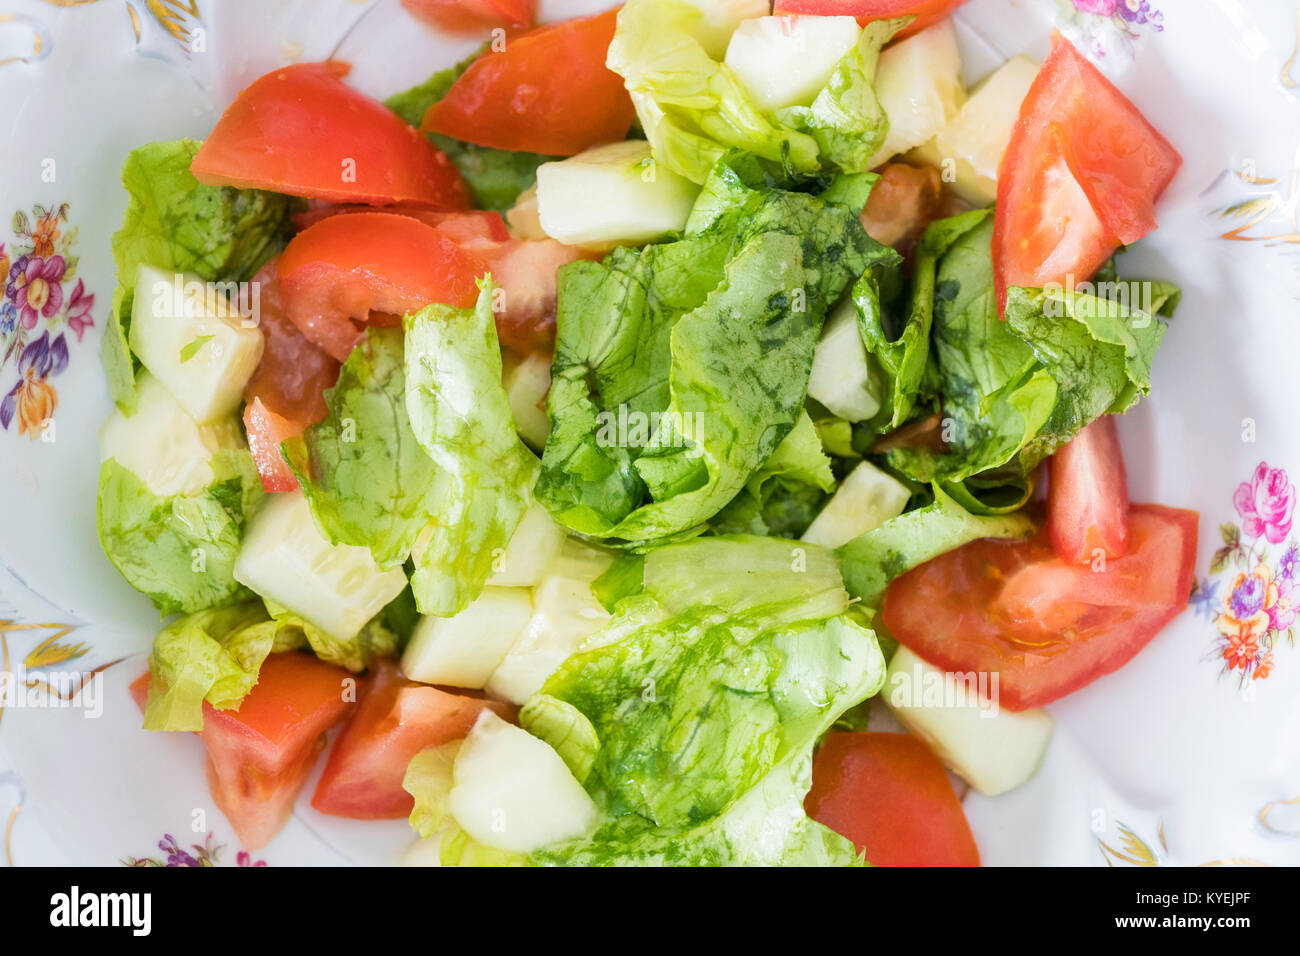 Insalata di verdure con pomodori, cetrioli e insalata verde Foto Stock